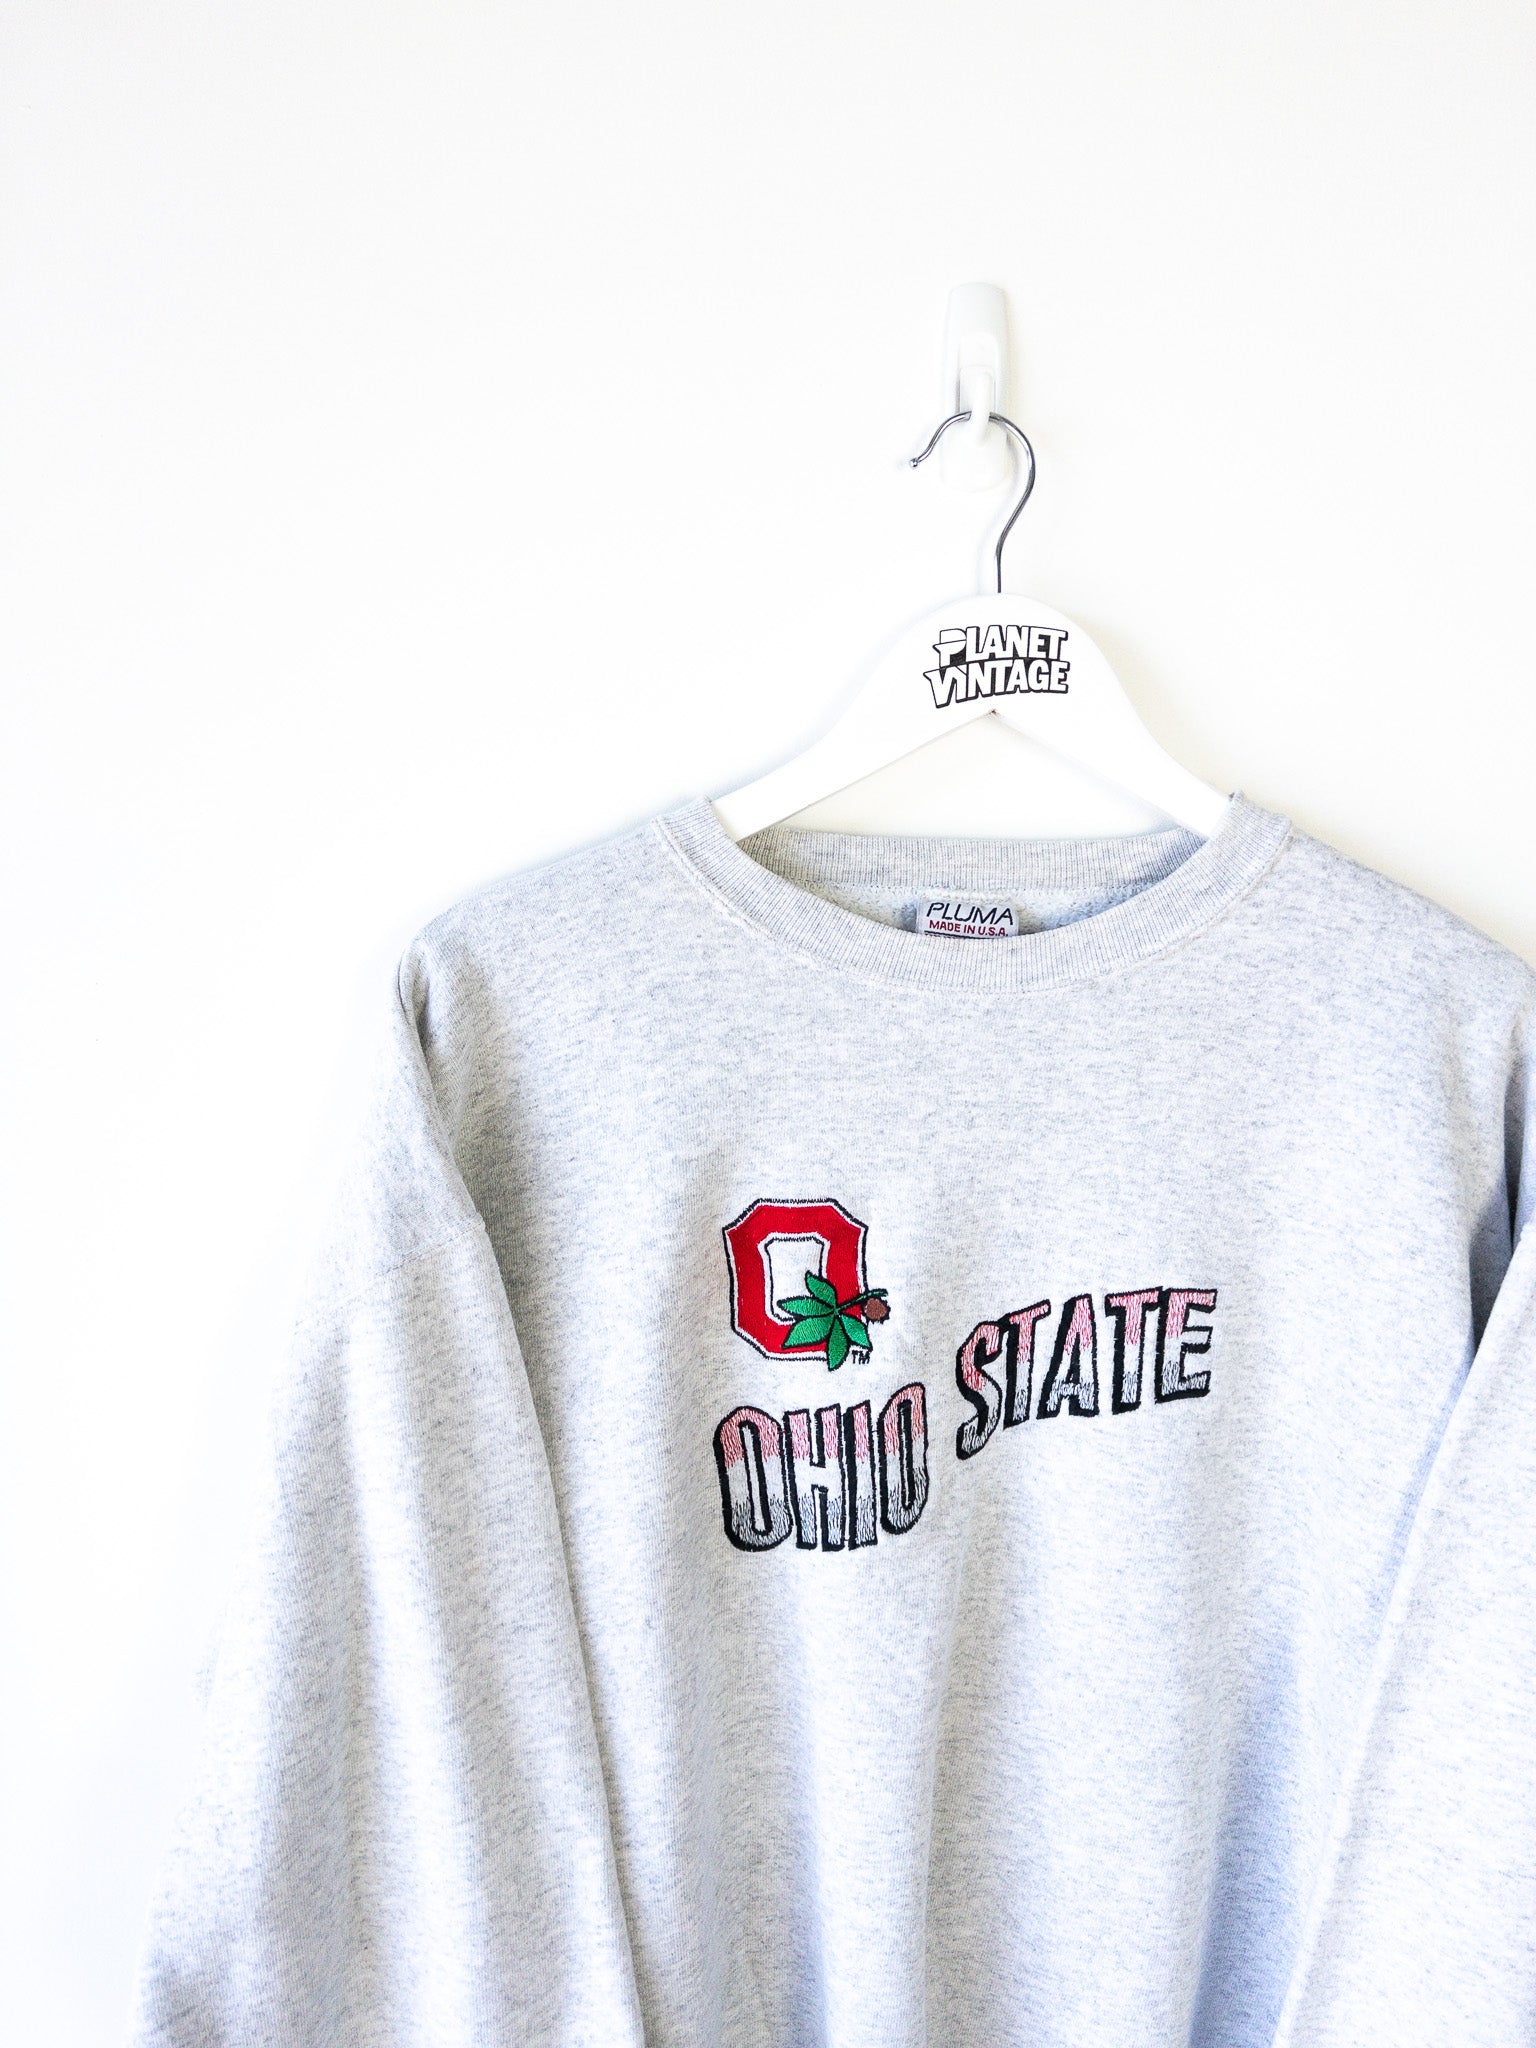 Vintage Ohio State Sweatshirt (L)